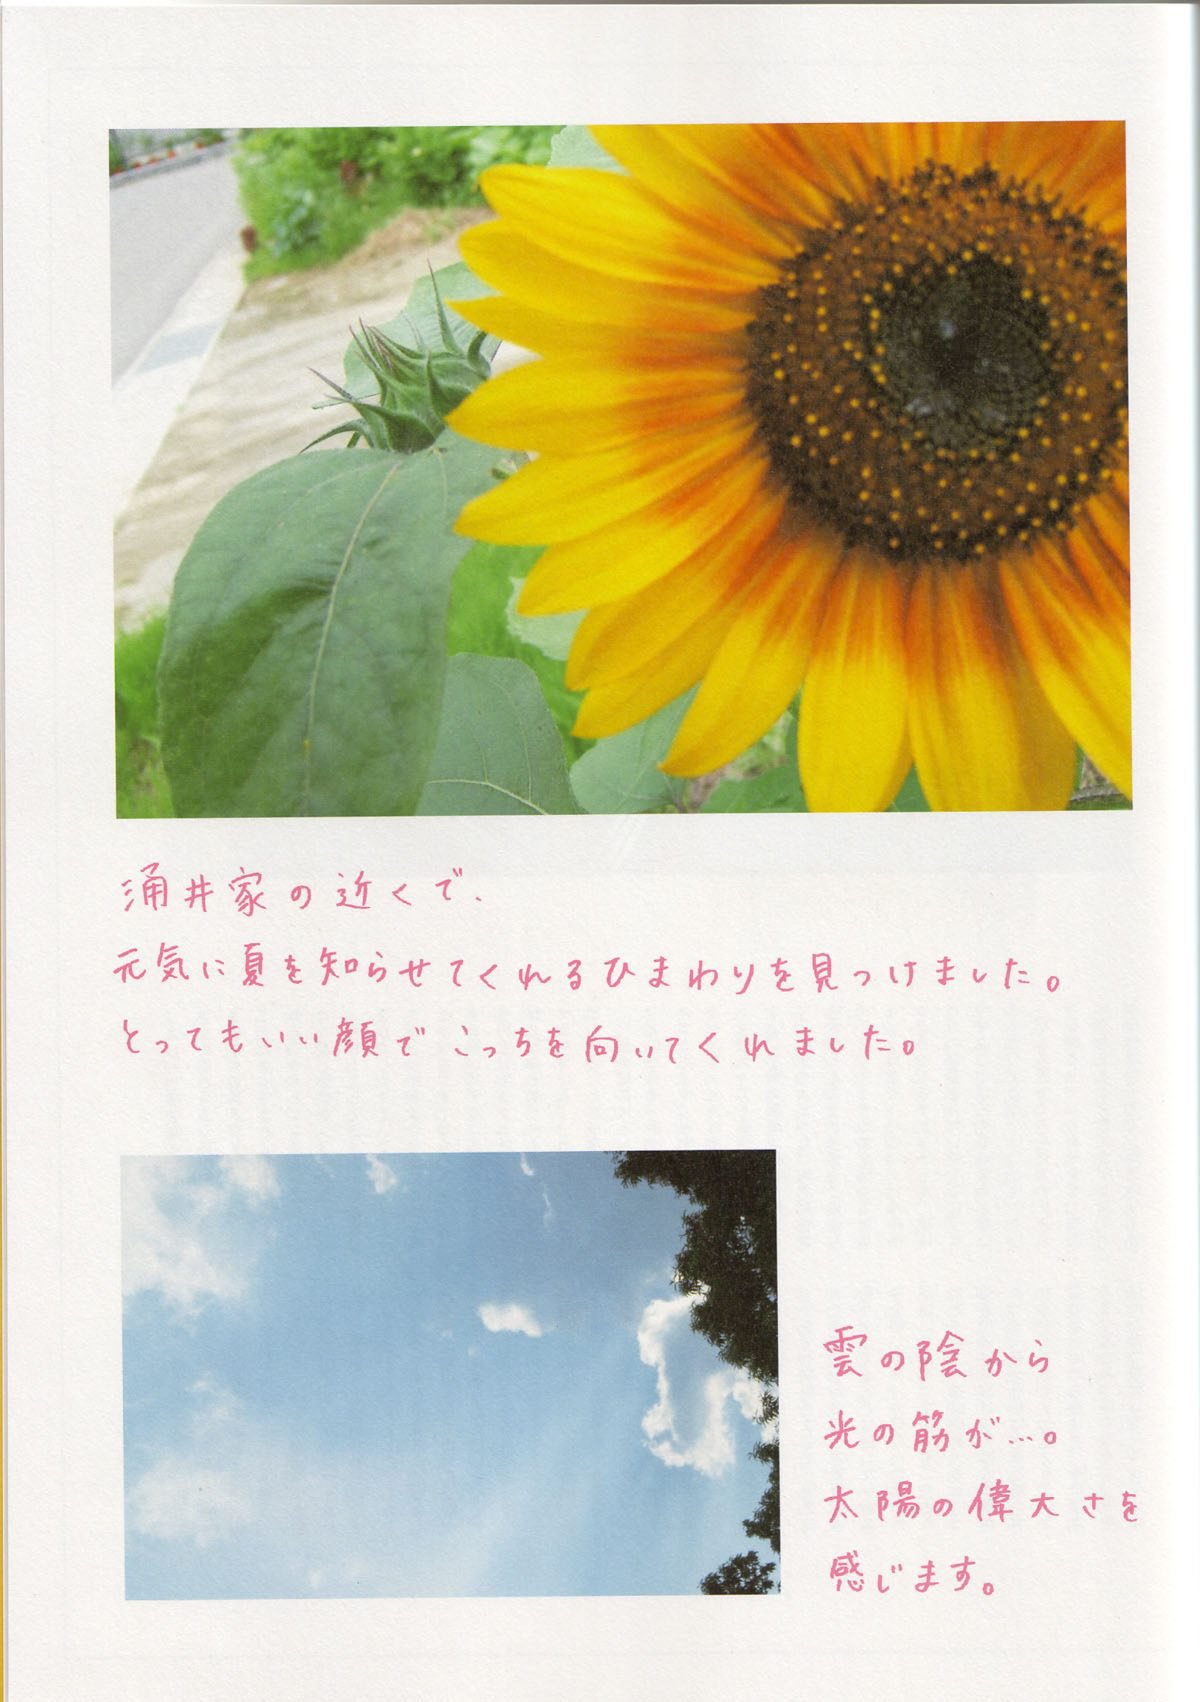 Photobook Maki Horikita 堀北真希 Cinematic 2007 03 07 0027 3825190527.jpg